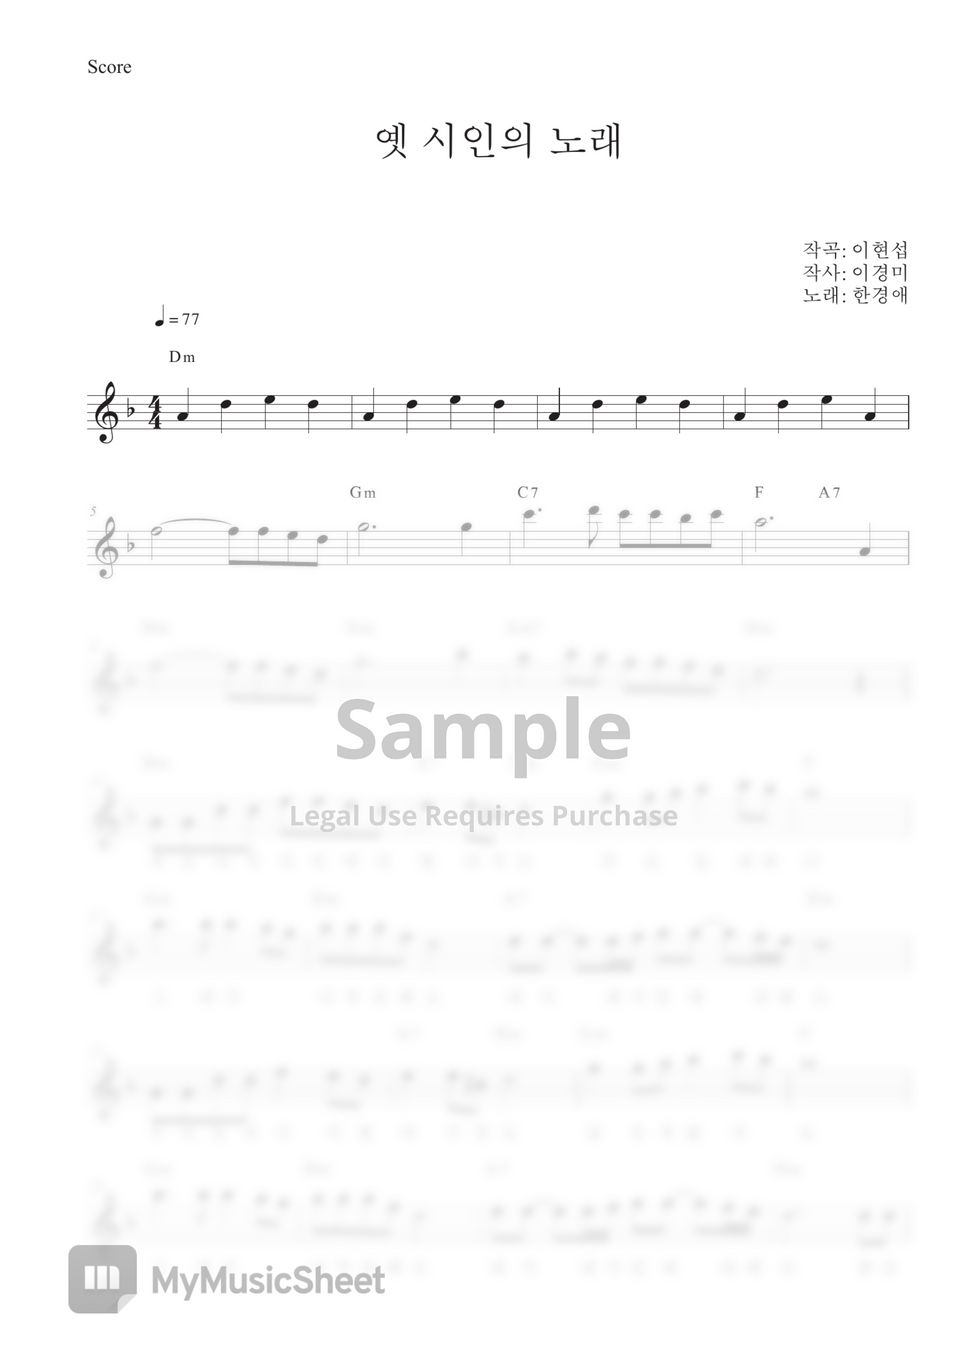 한경애 - 옛 시인의 노래 Dm (리코더 / 색소폰 / 가사첨부/ 코드첨부) by Thesaxophonist